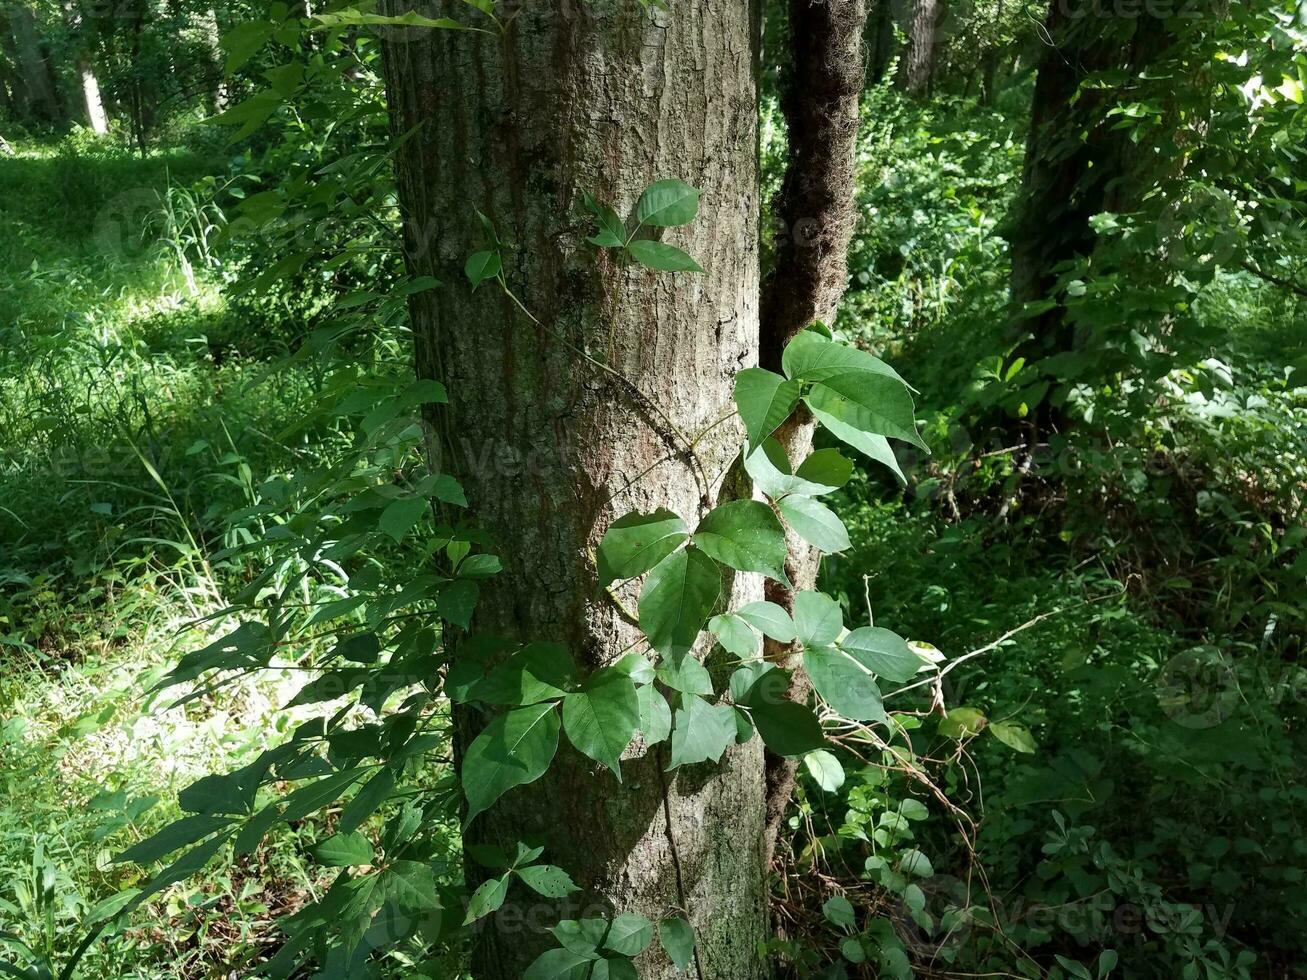 Efeu wächst am Baumstamm foto